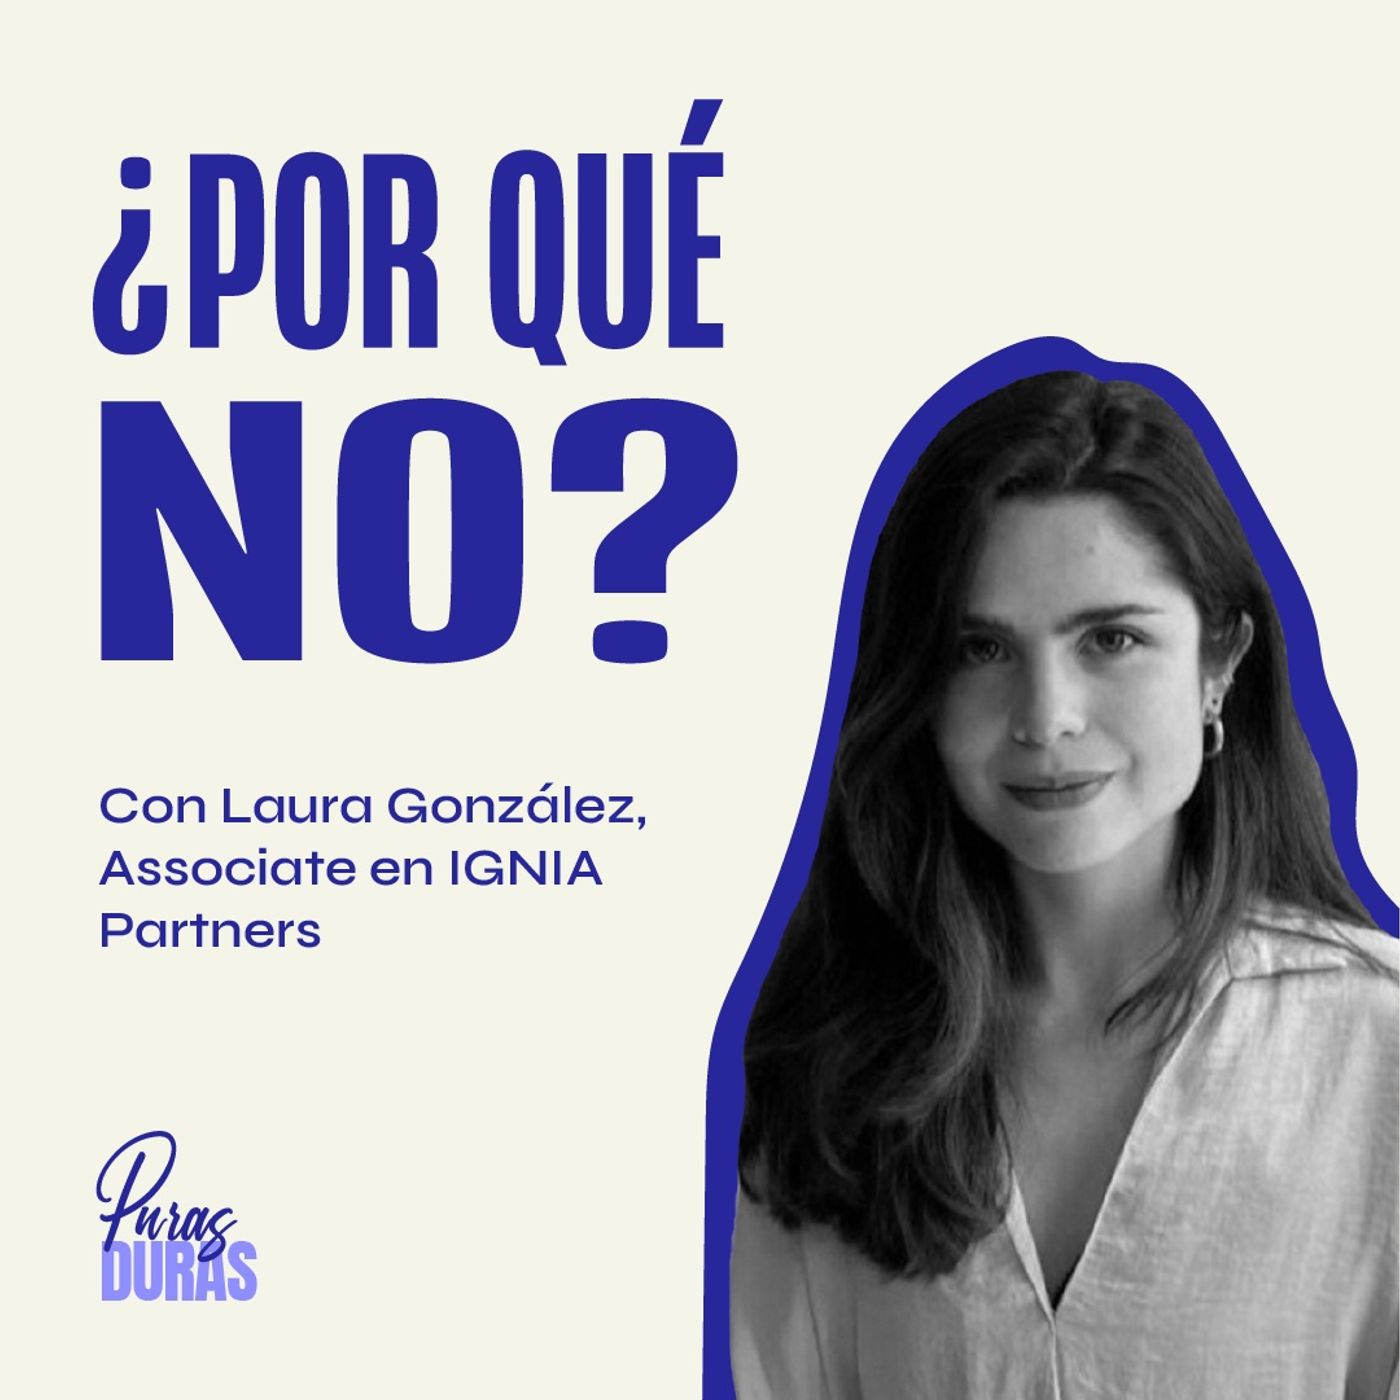 “¿Por qué no?” con Laura González, Associate en IGNIA Partners